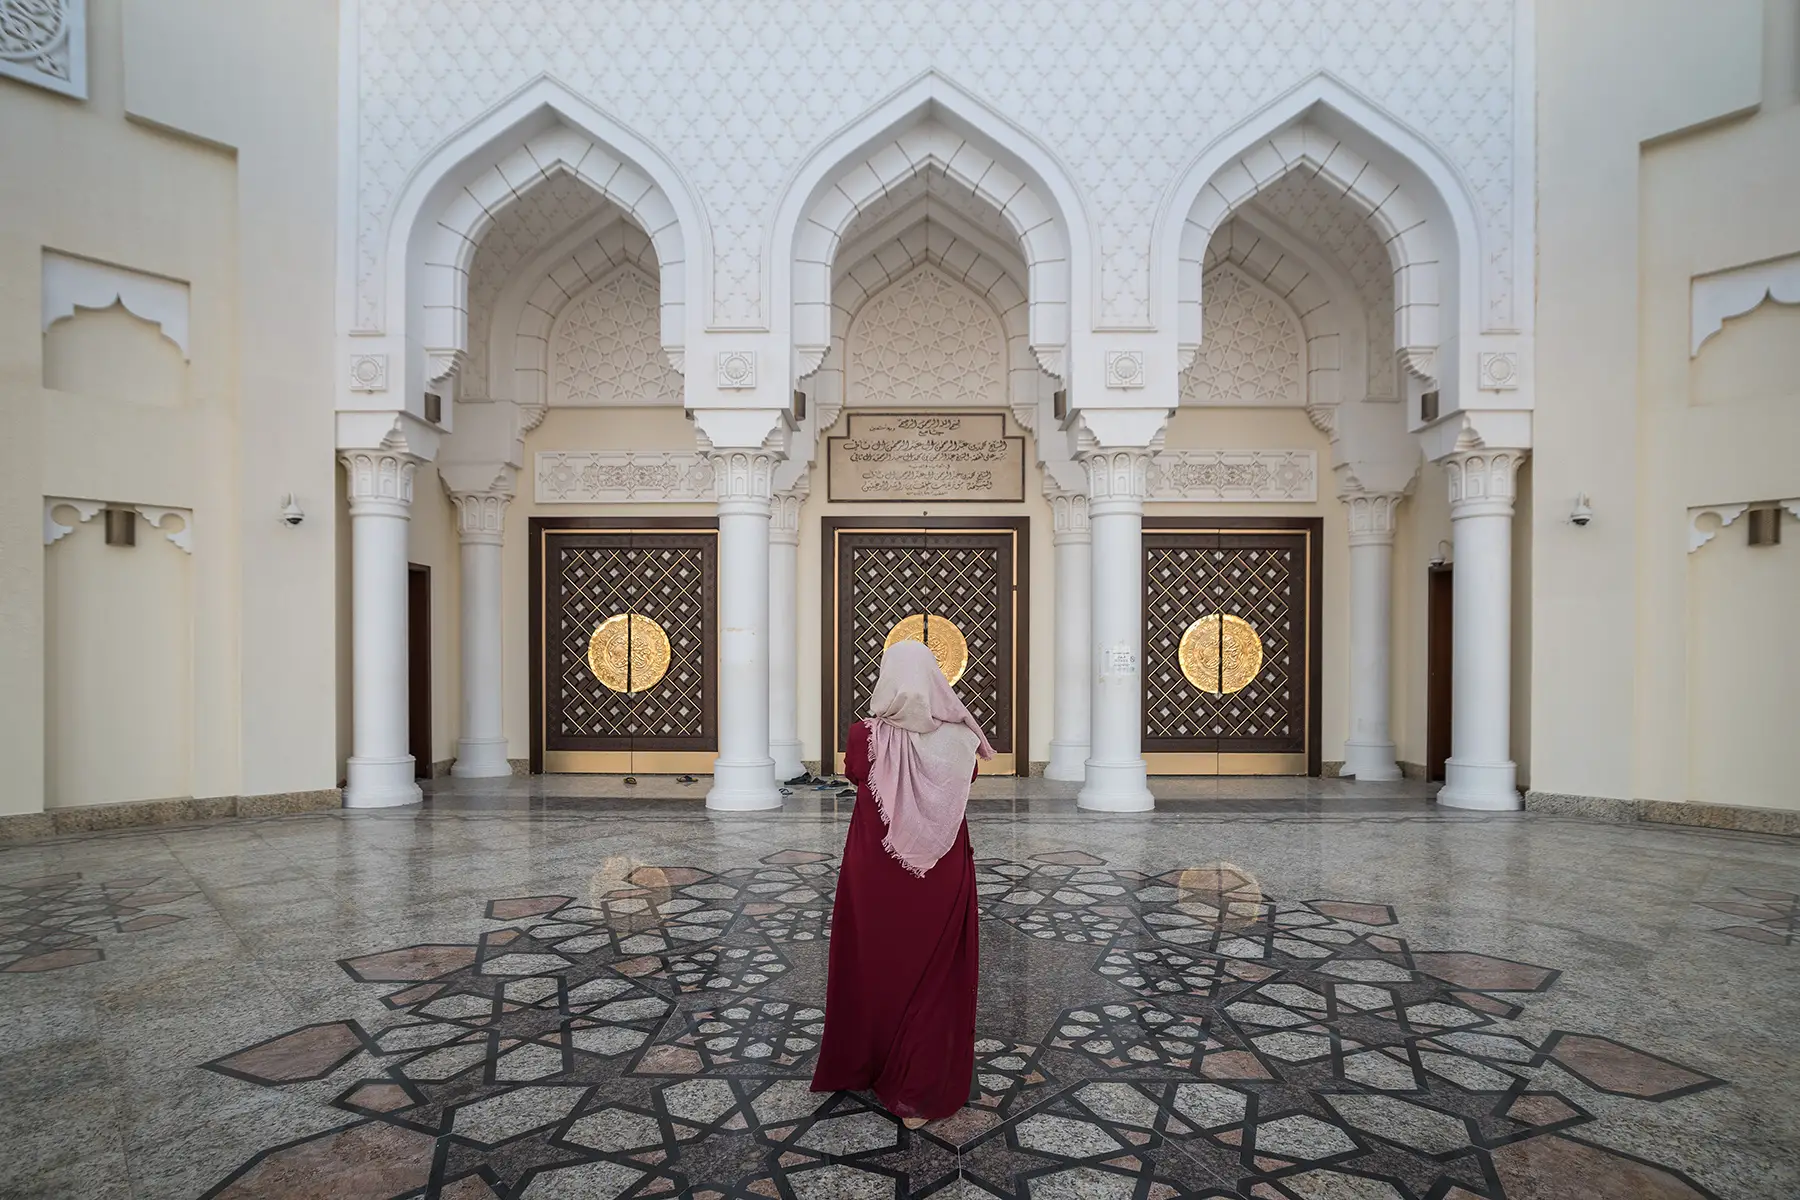 Qatari woman at the Al Wukair Grand Mosque in Qatar